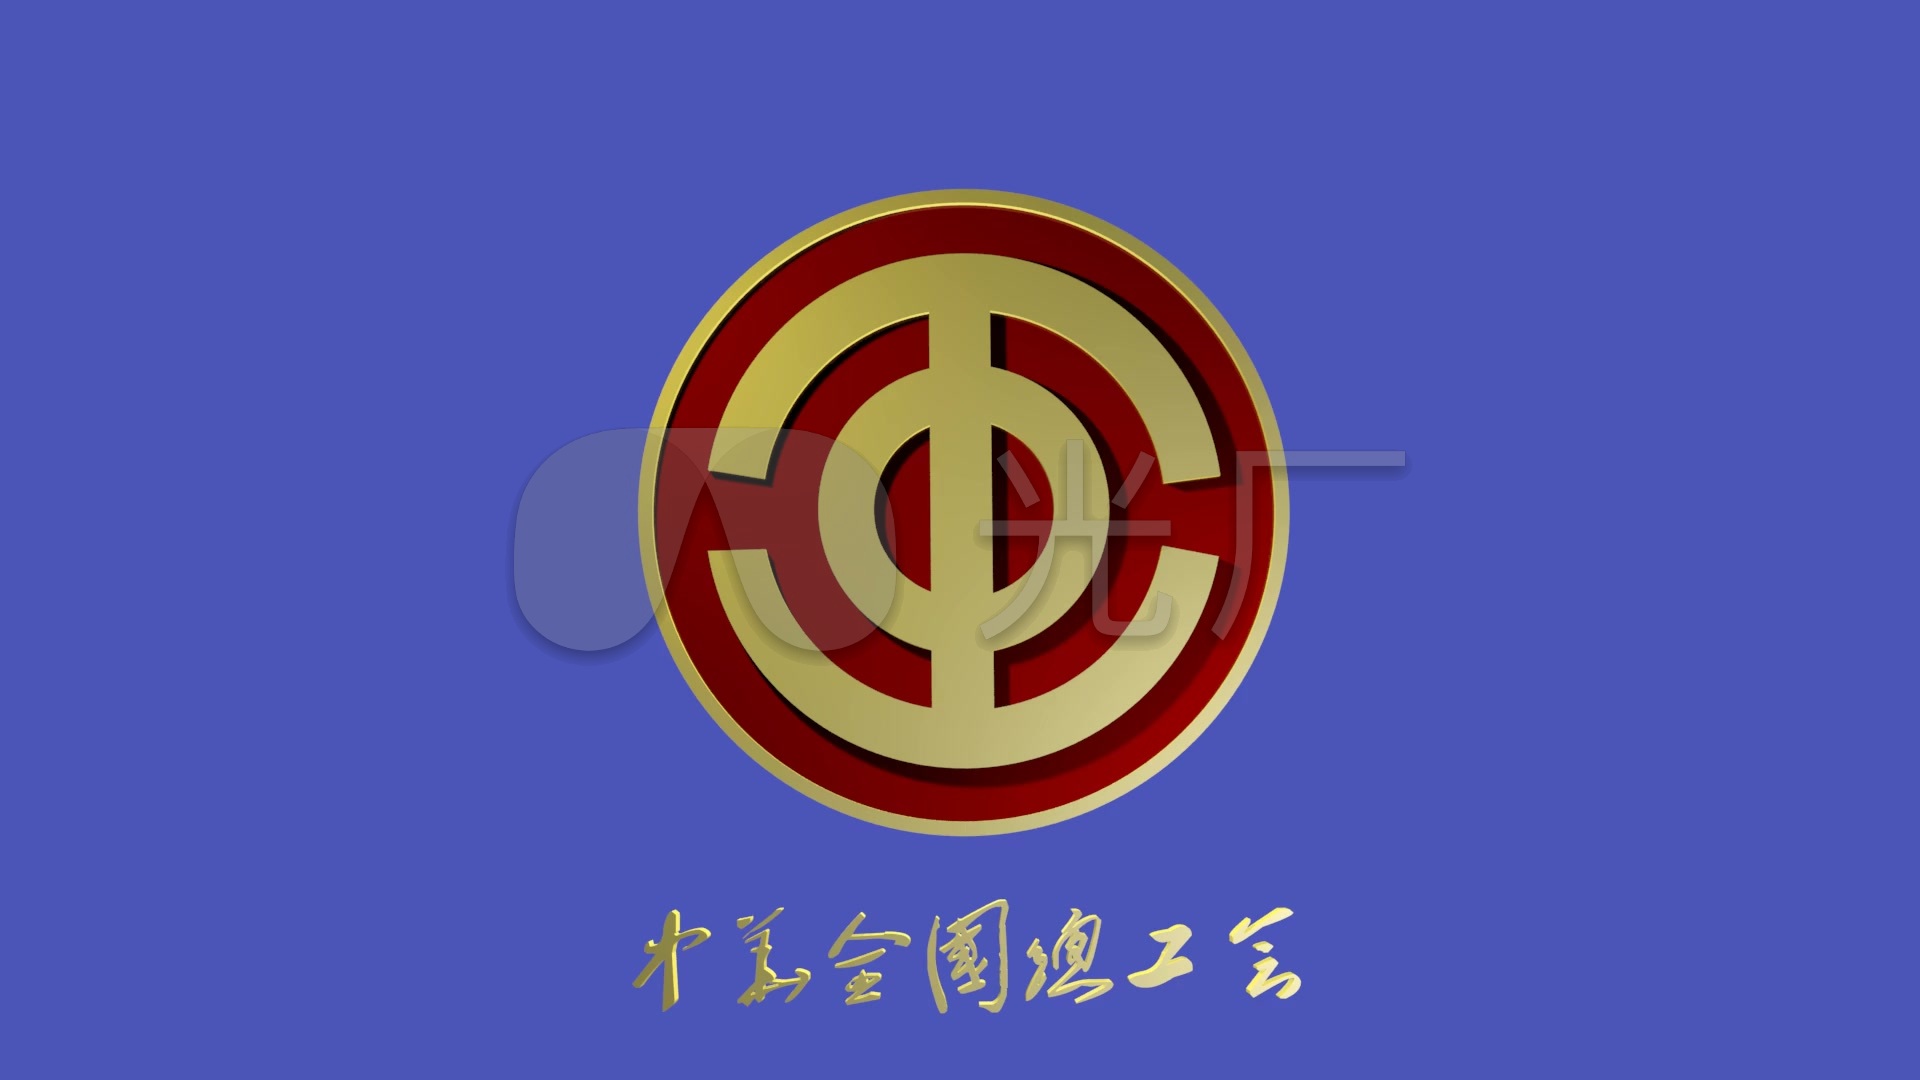 中华全国总工会会徽素材(可抠像)1_1920x1080_高清(:)